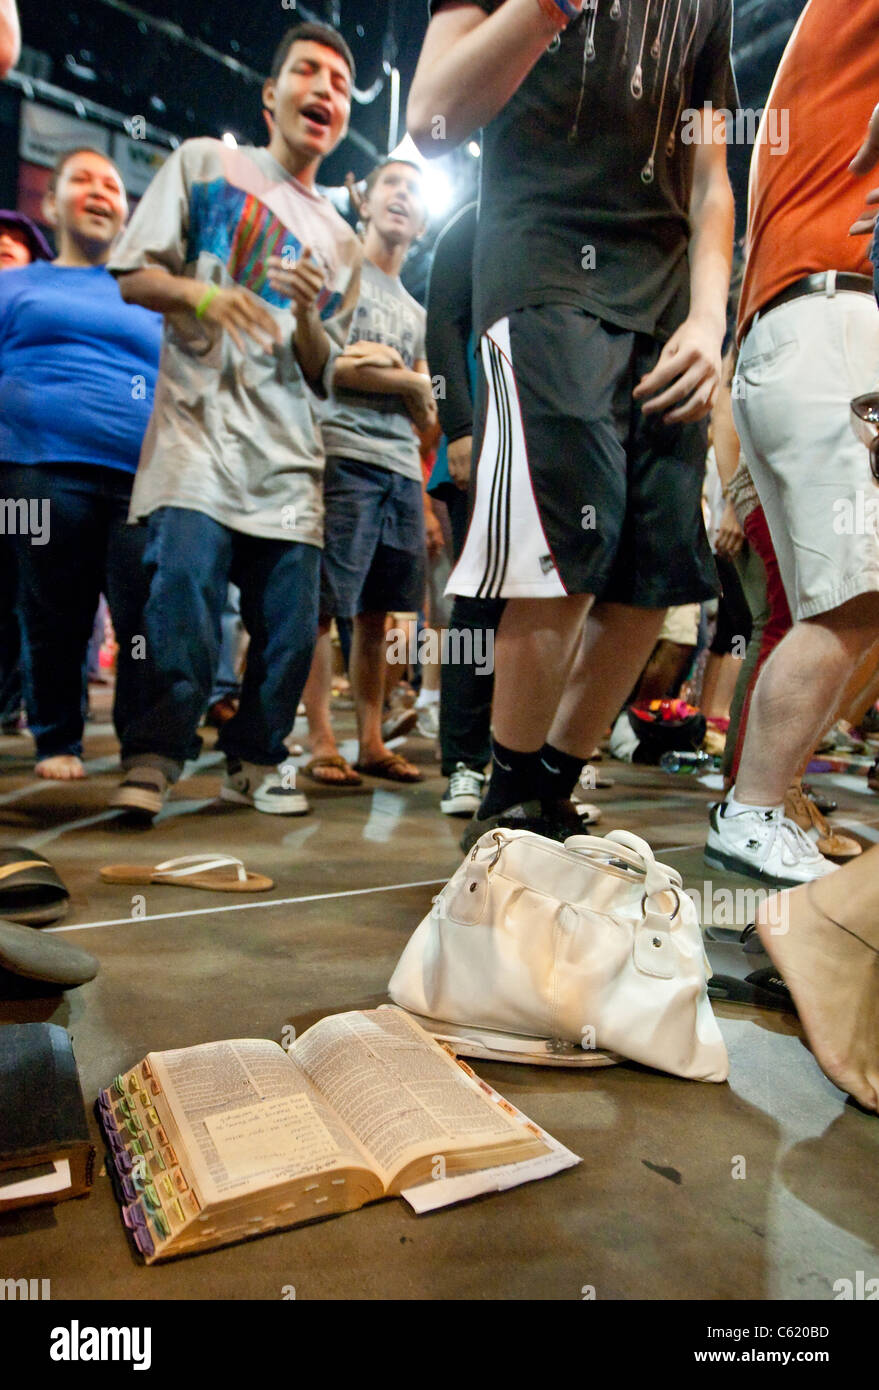 Religieux chrétiens fidèles danser et chanter pendant le culte avec une bible ouverte sur le plancher à tous les jours de l'événement de prière à Houston au Texas Banque D'Images